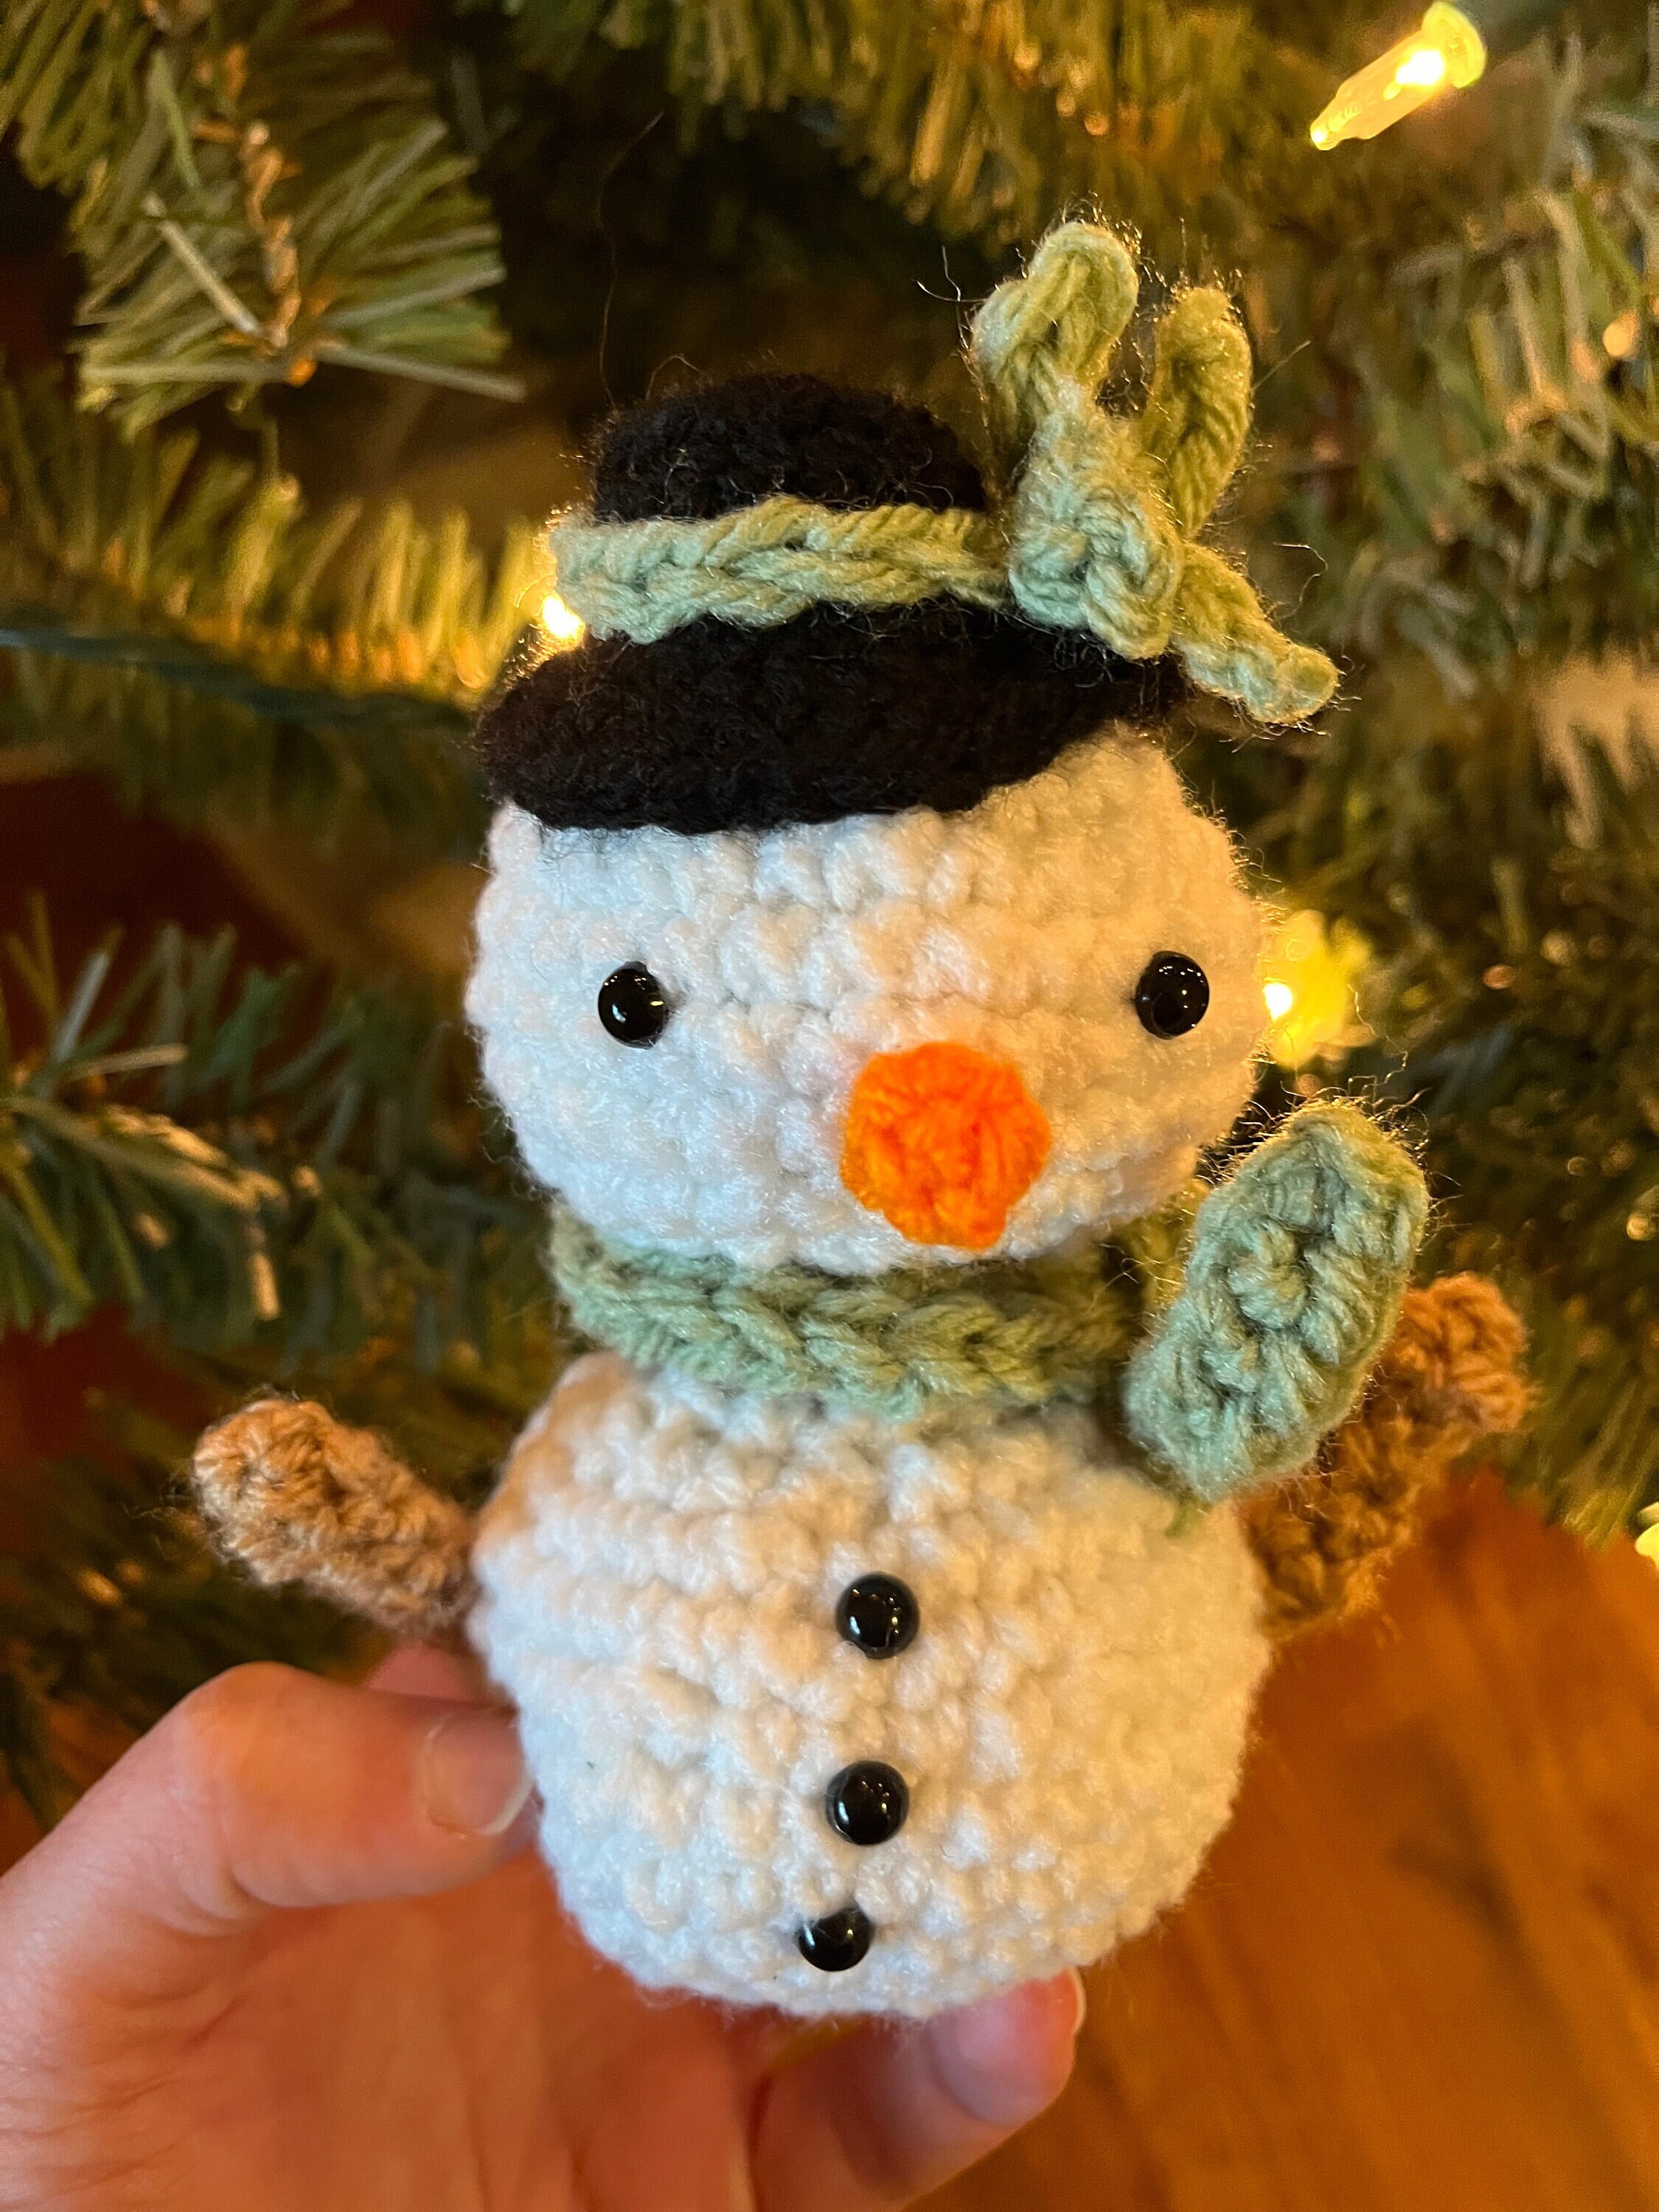 Snowman Snowman Decor Christmas Ornament Primitive Snowman 